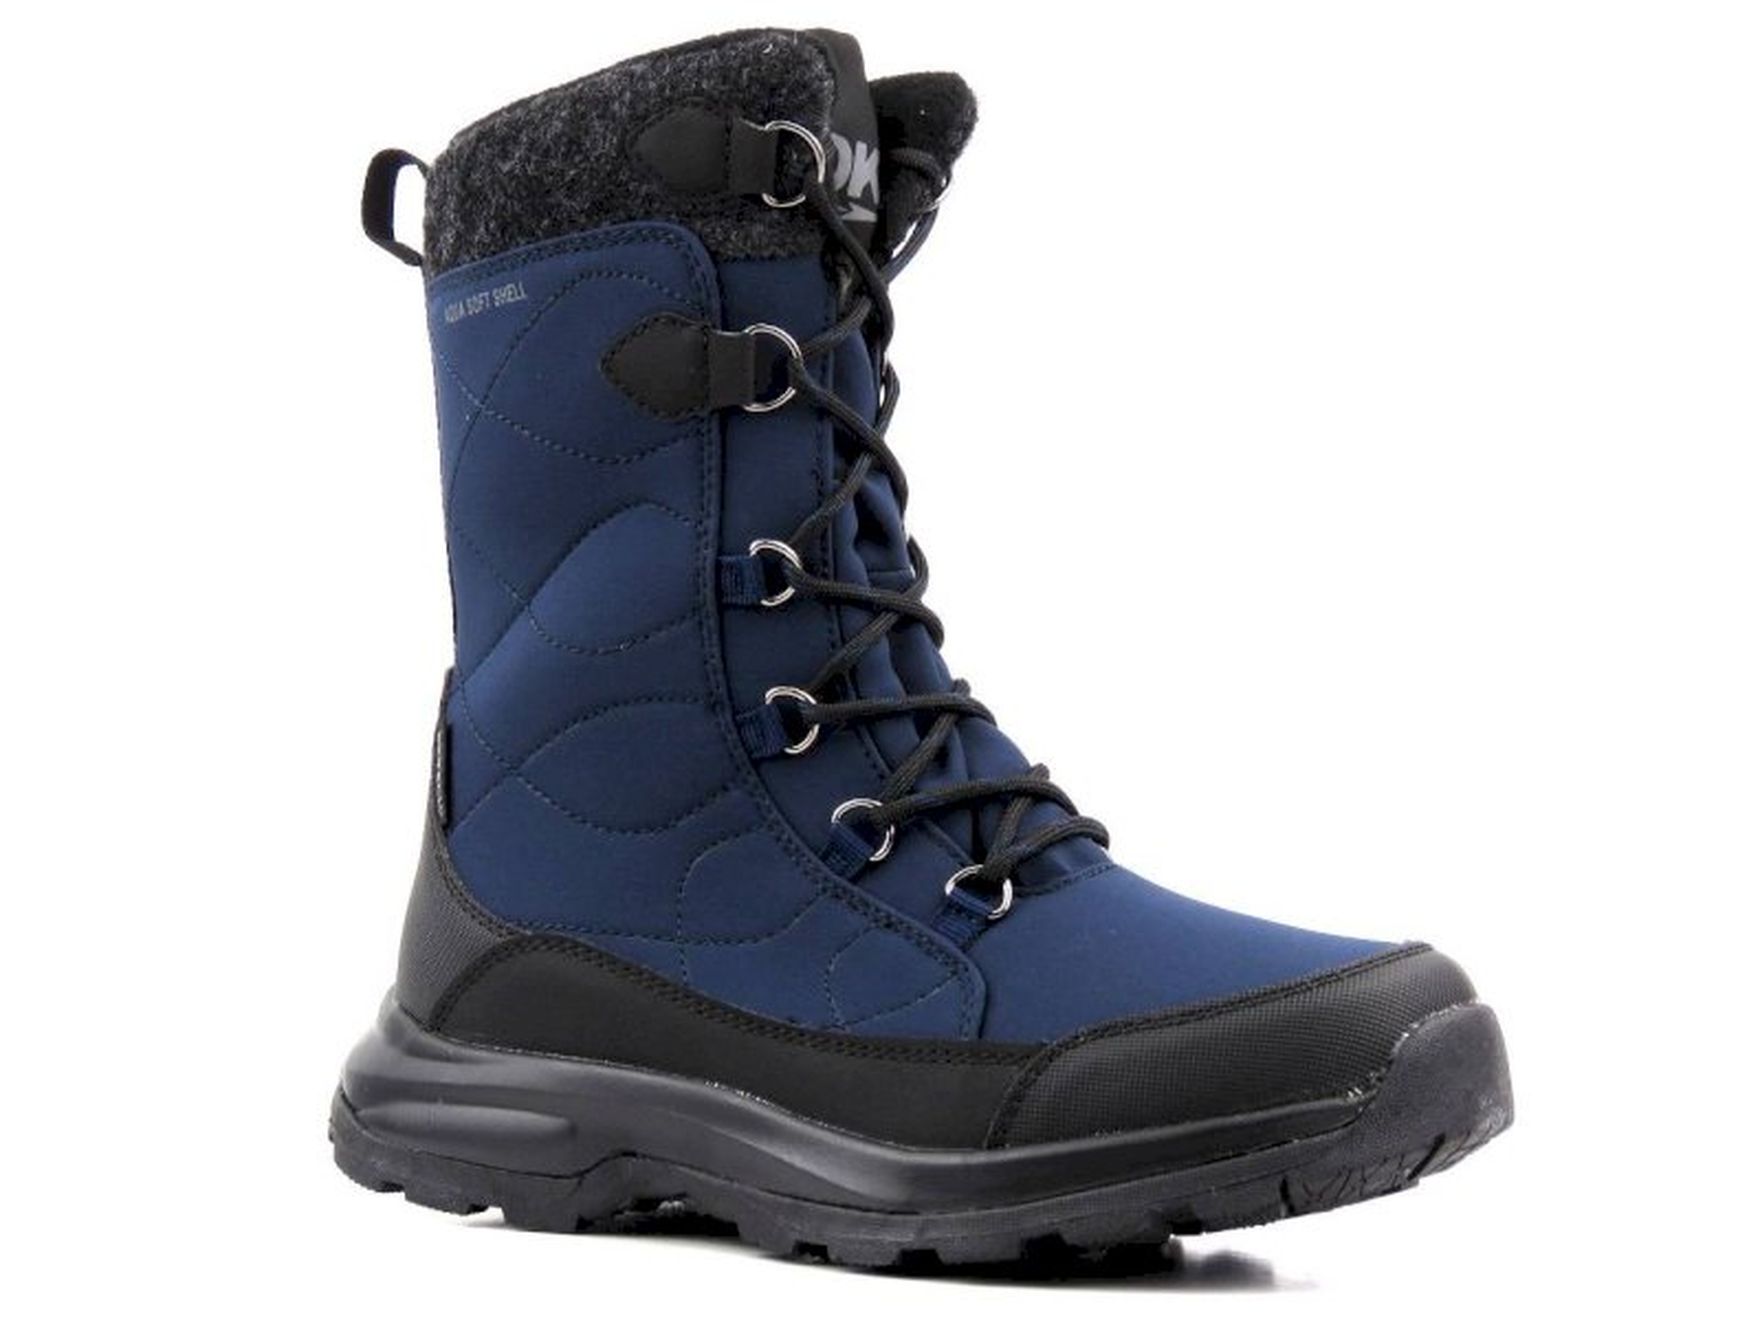 Wysokie buty zimowe, śniegowce damskie DK TECH SoftShell 2105, granatowe za 197 PLN